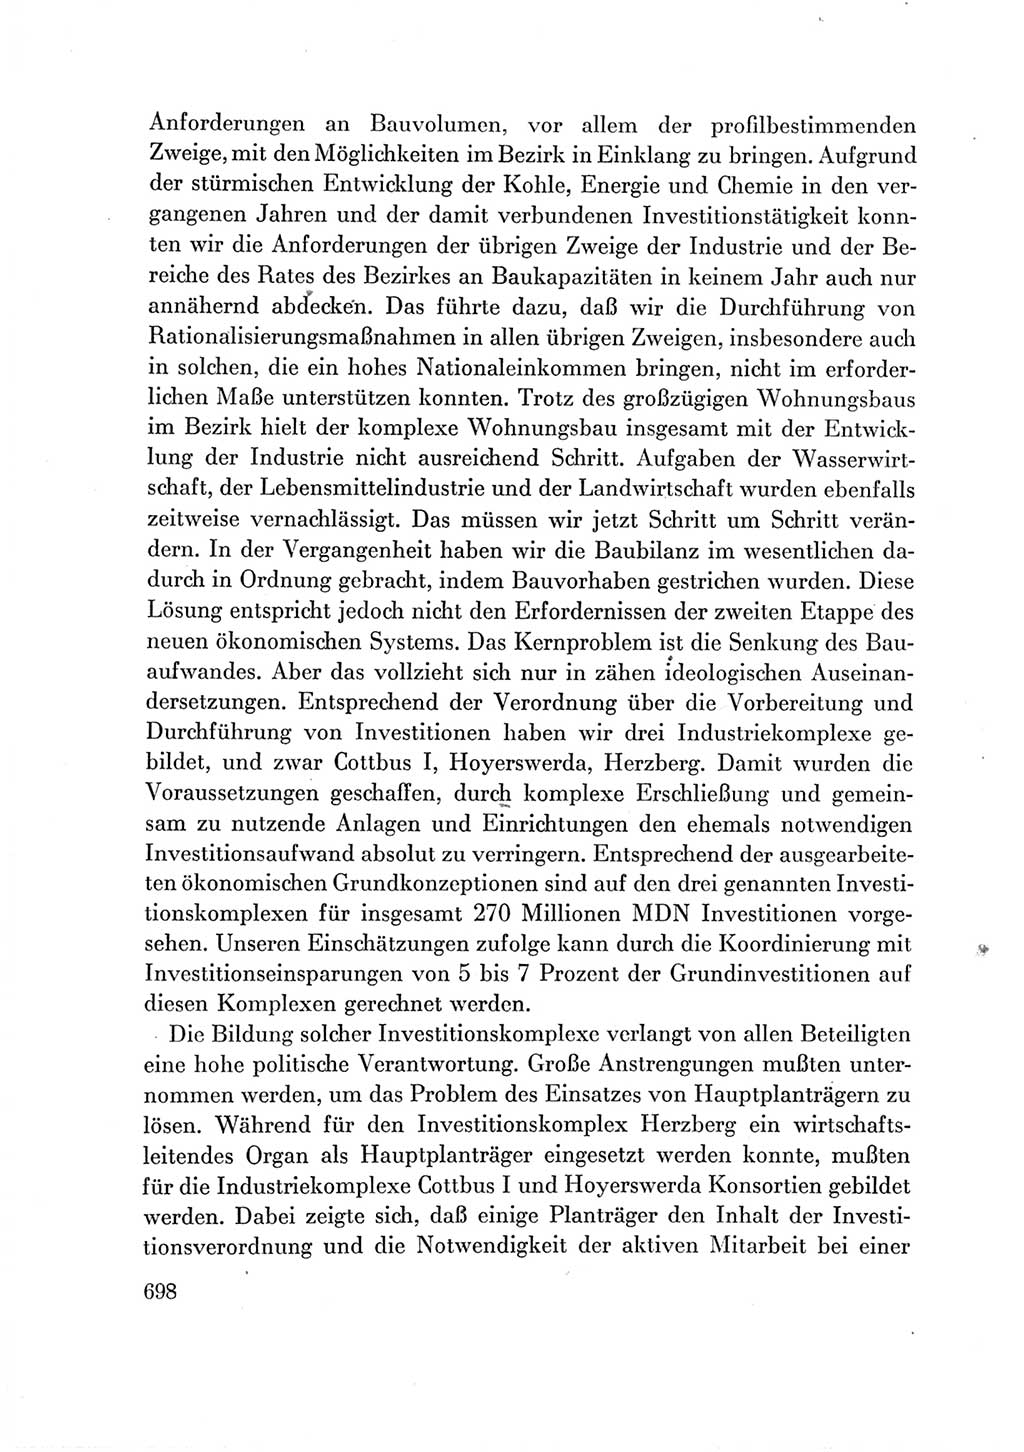 Protokoll der Verhandlungen des Ⅶ. Parteitages der Sozialistischen Einheitspartei Deutschlands (SED) [Deutsche Demokratische Republik (DDR)] 1967, Band Ⅲ, Seite 698 (Prot. Verh. Ⅶ. PT SED DDR 1967, Bd. Ⅲ, S. 698)